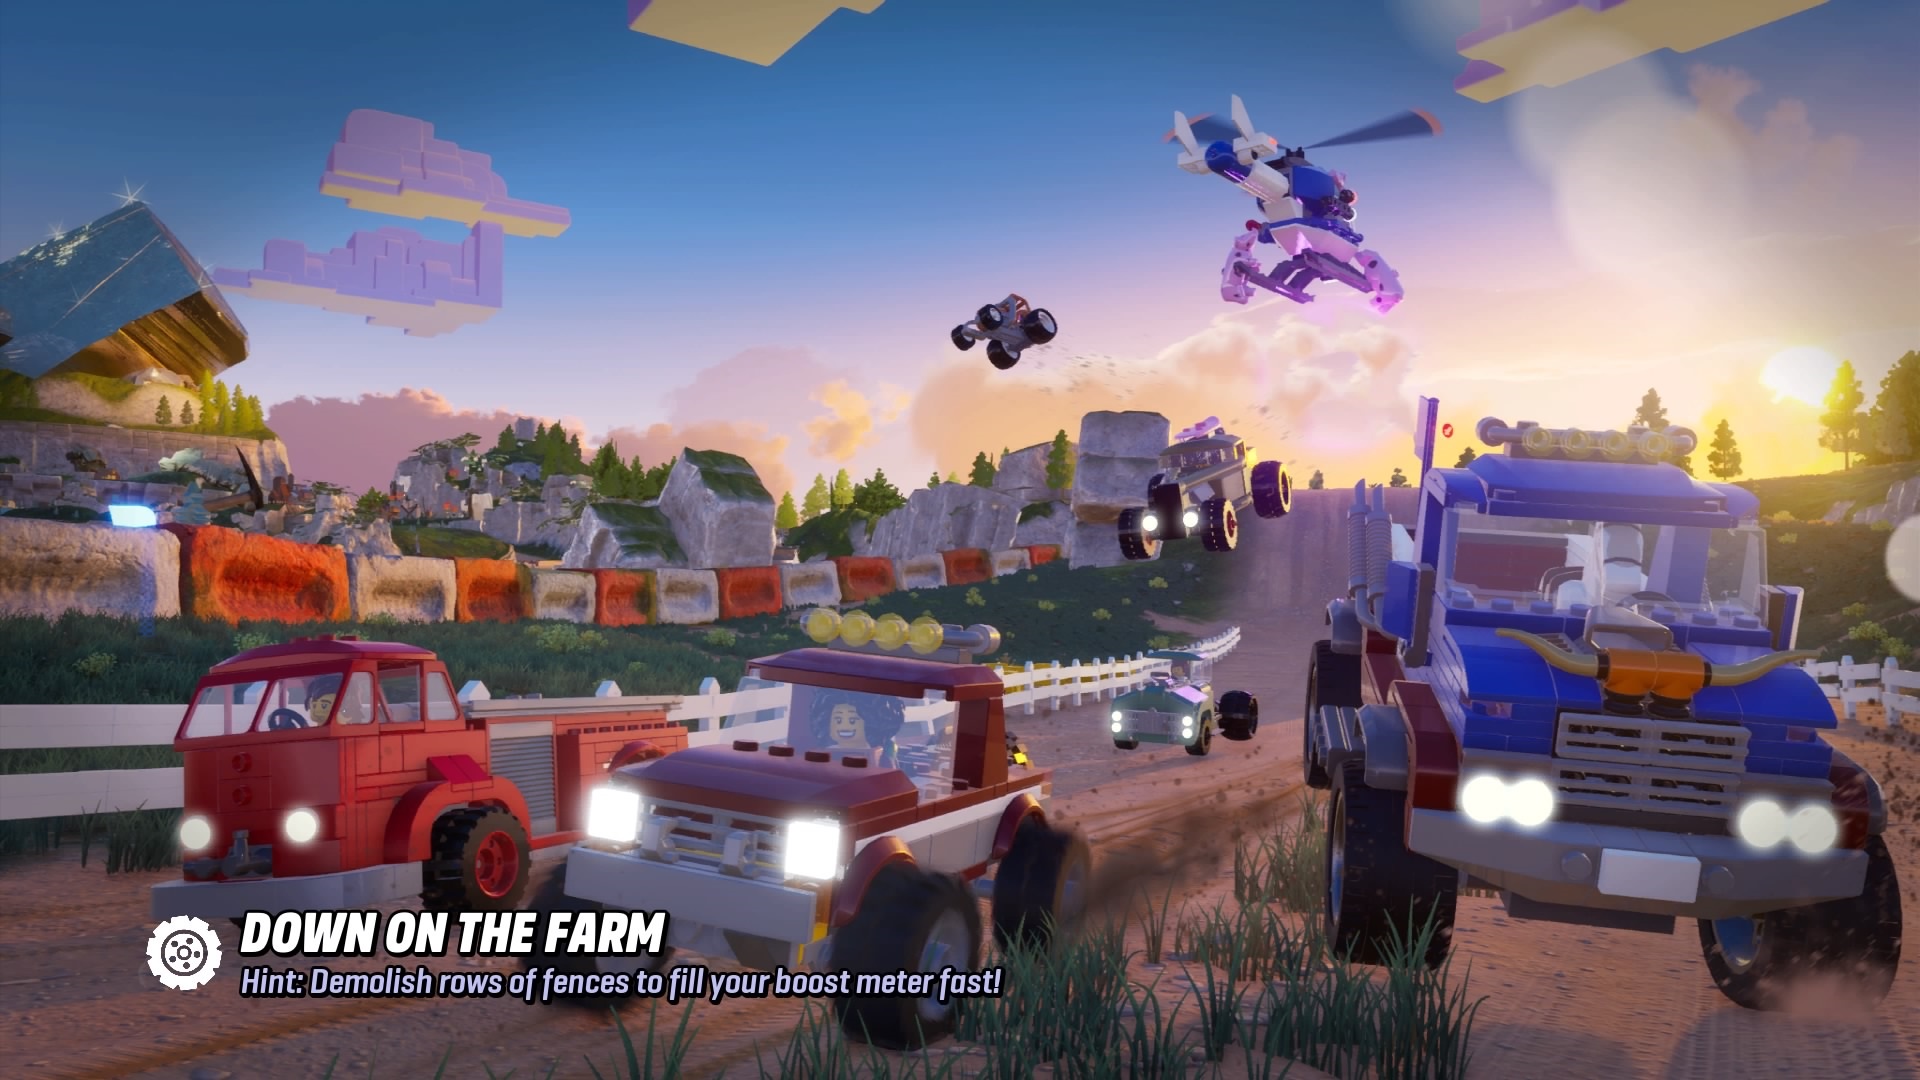 LEGO 2K Drive é anunciado para consoles e PC com lançamento para maio de  2023